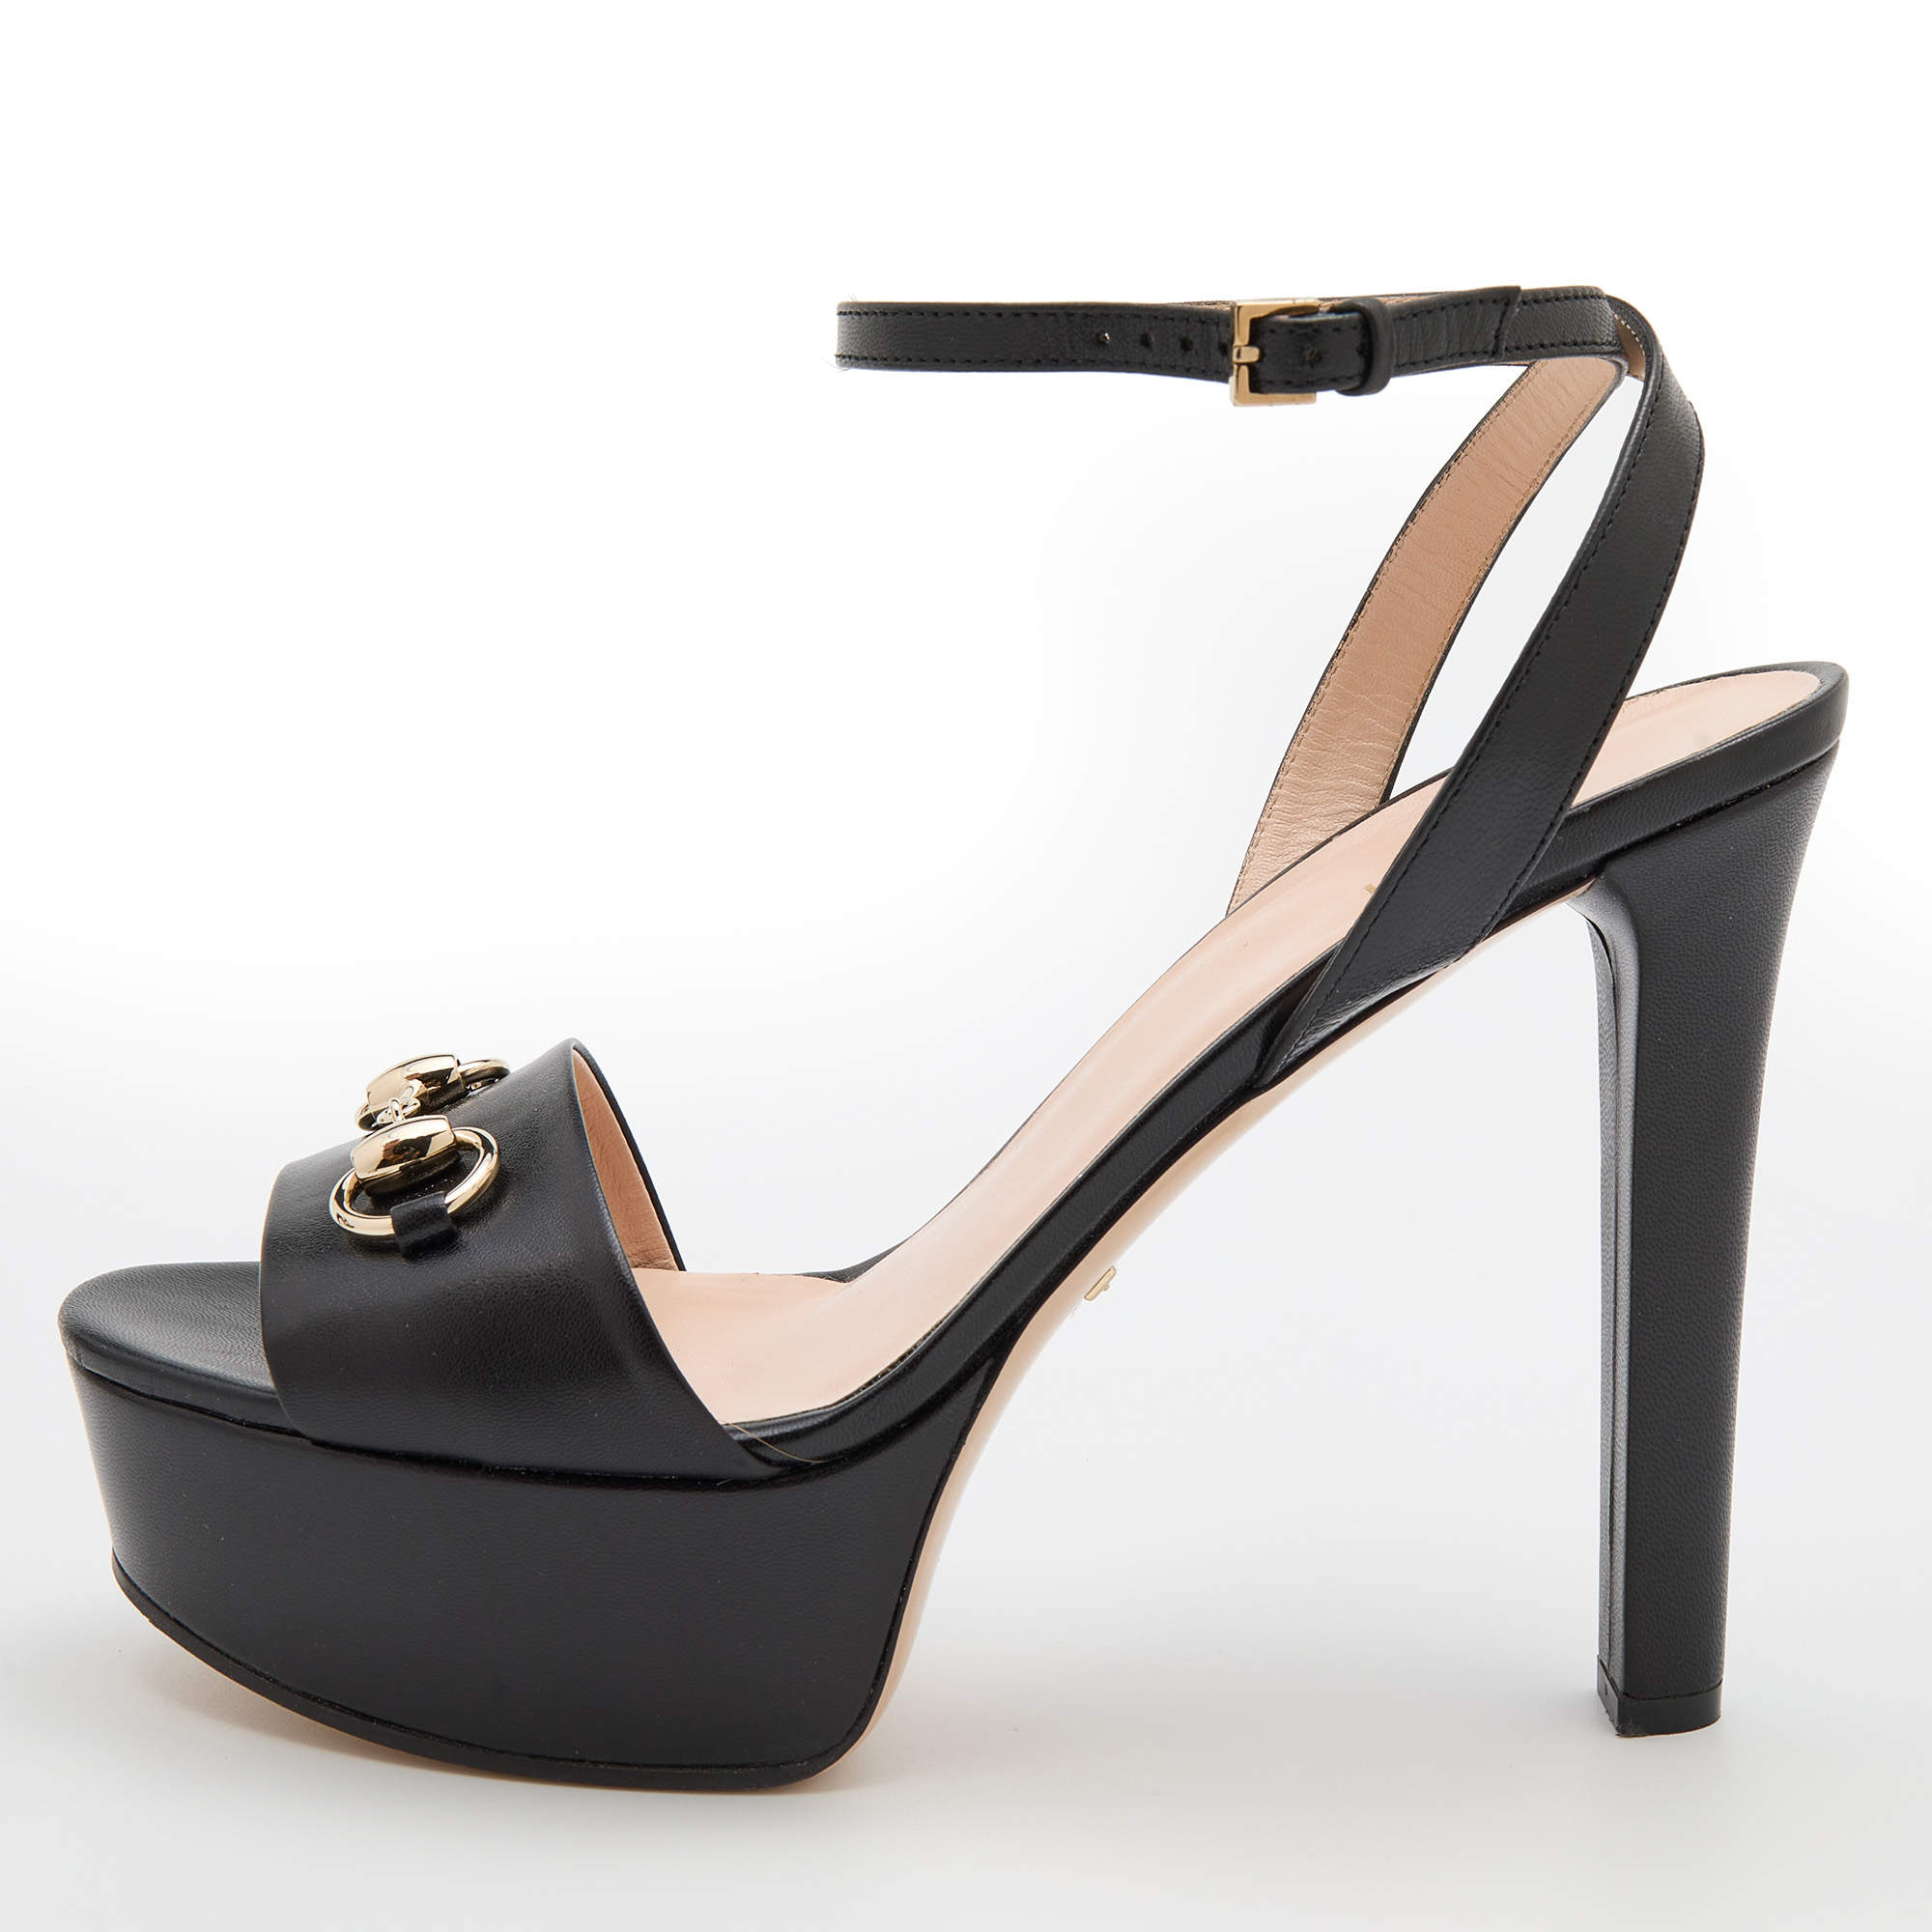 Gucci Black Leather Horsebit Platform Ankle Strap Sandals Size 40 Gucci ...